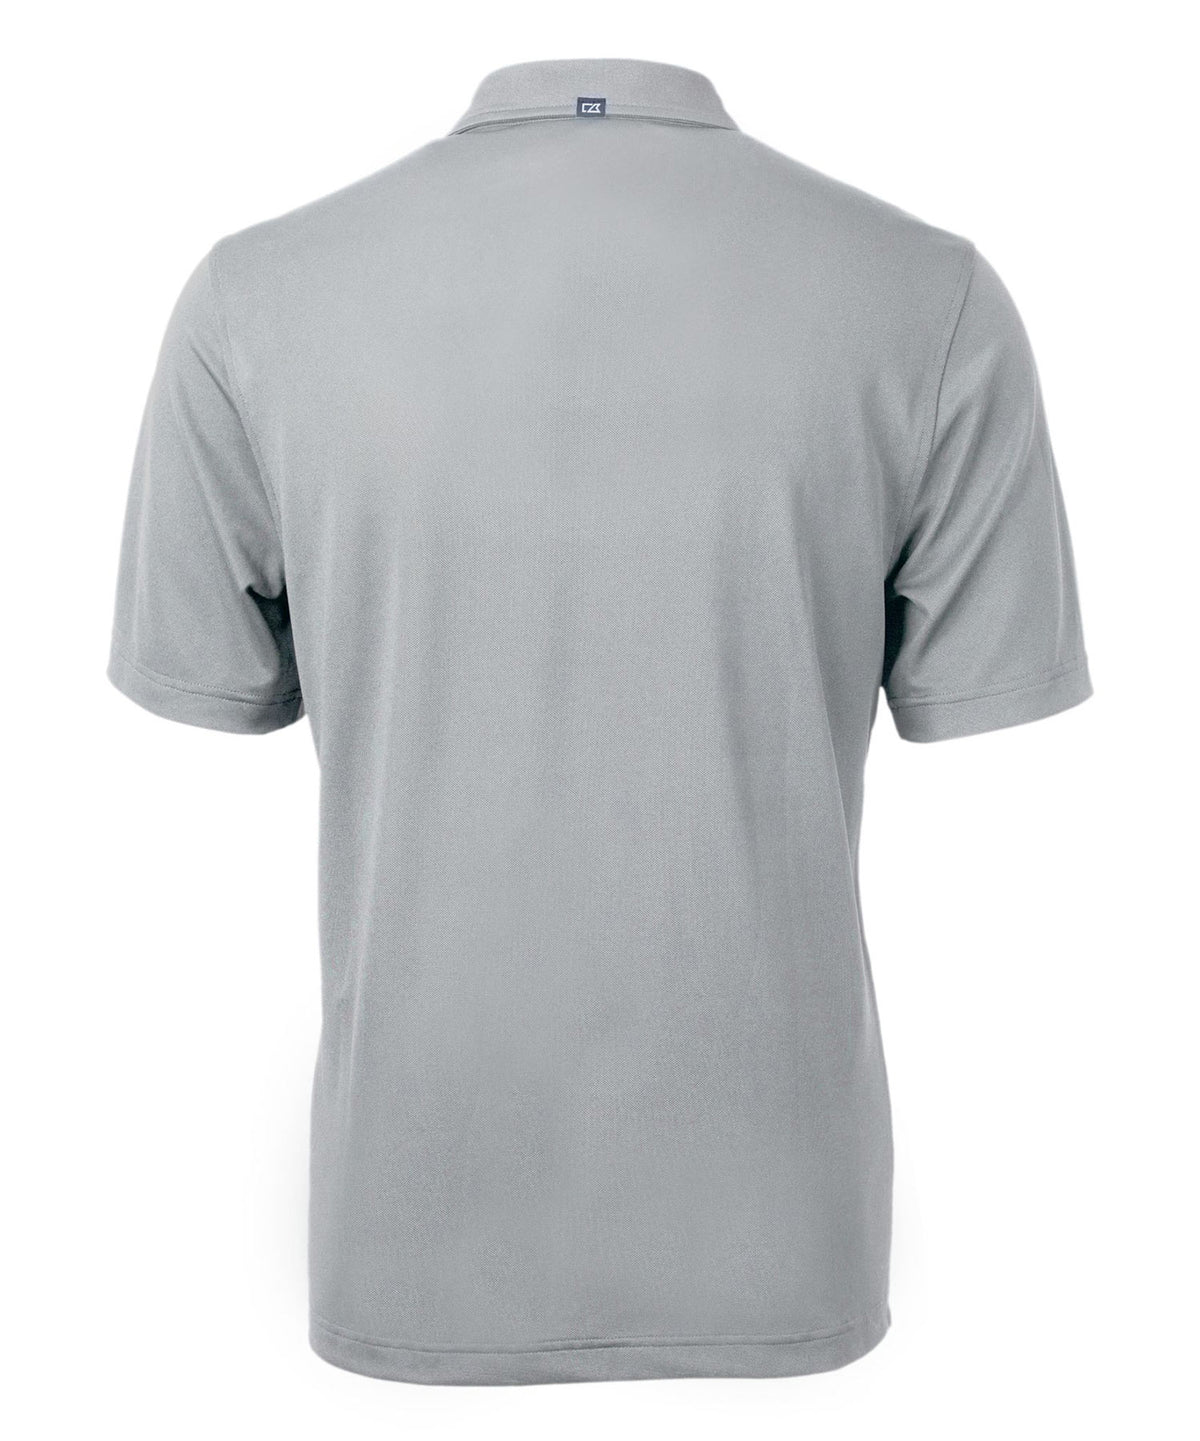 Cutter & Buck Green Bay Packers Short Sleeve Polo Knit Shirt, Men's Big & Tall